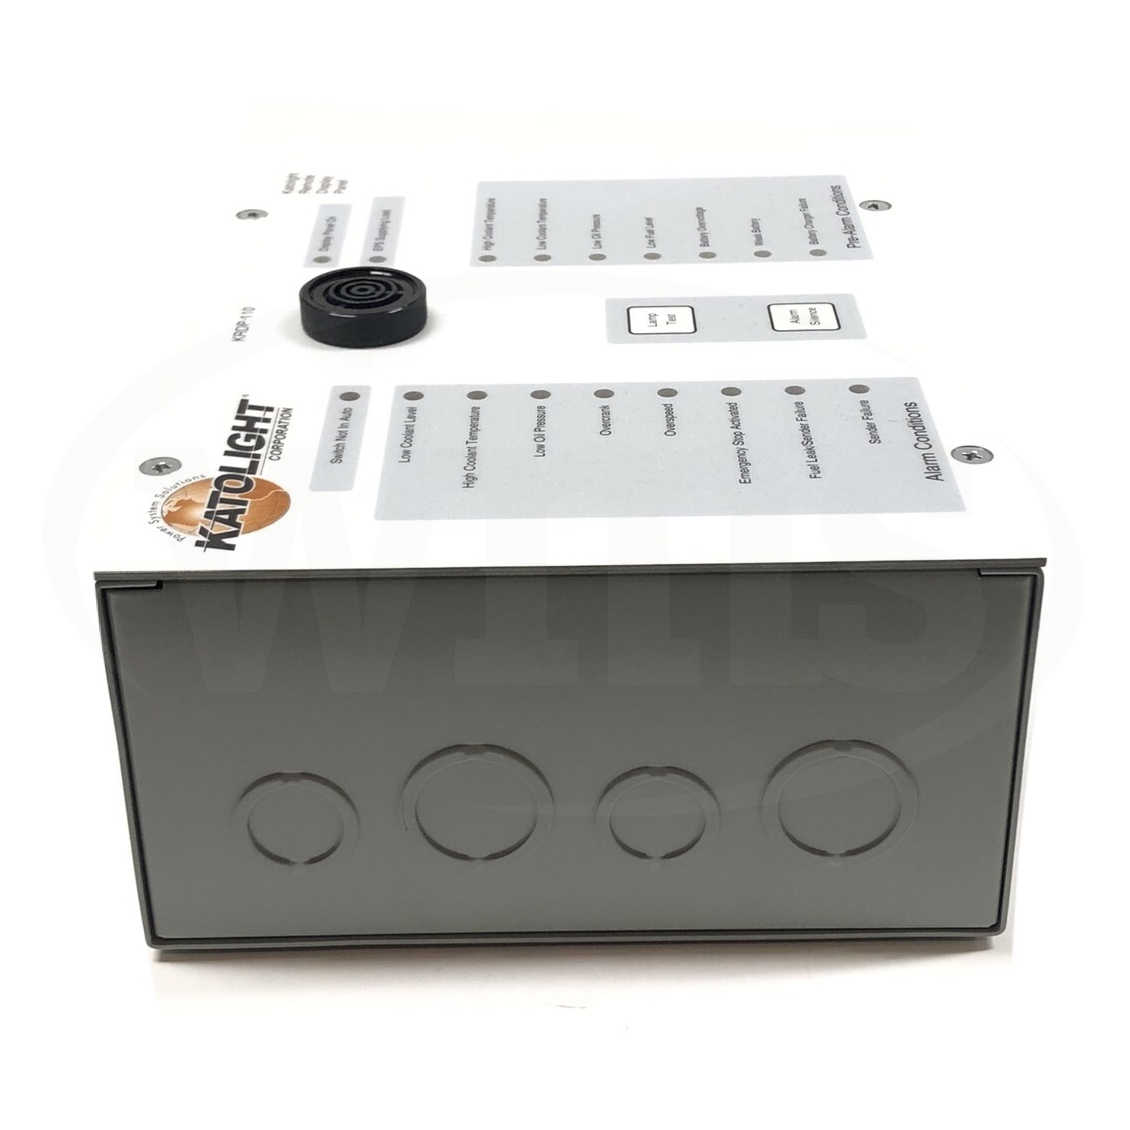 KRDP-110 Basler Katolight Alarm Remote Display Panel 2